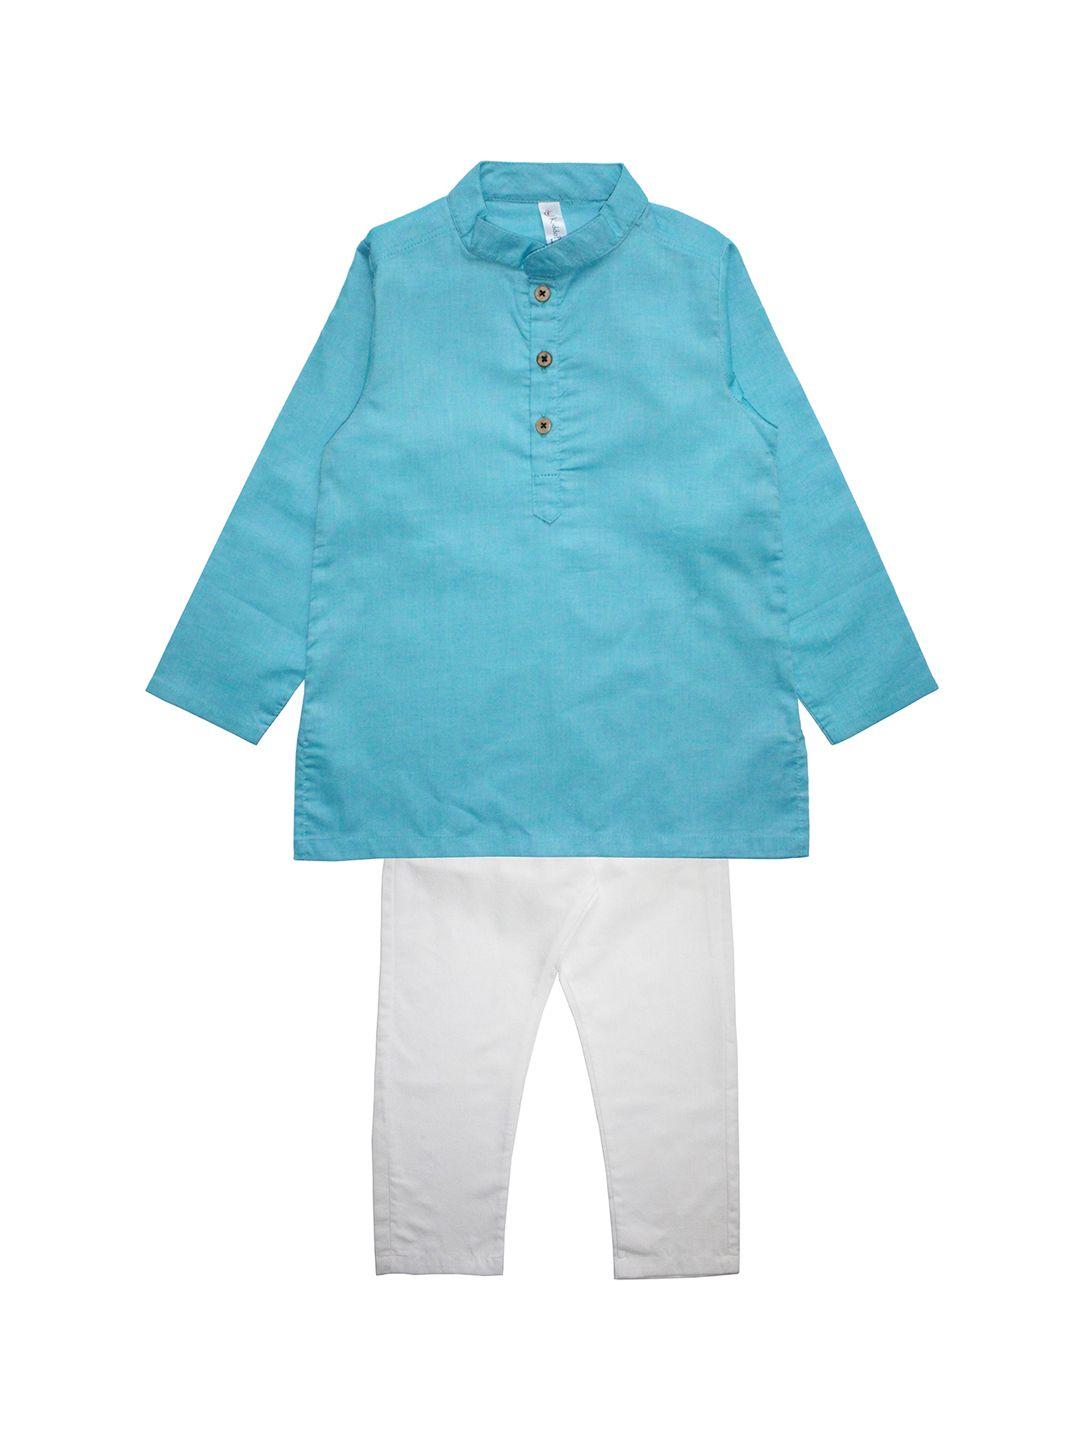 kiddopanti boys blue & white solid kurta with pyjamas